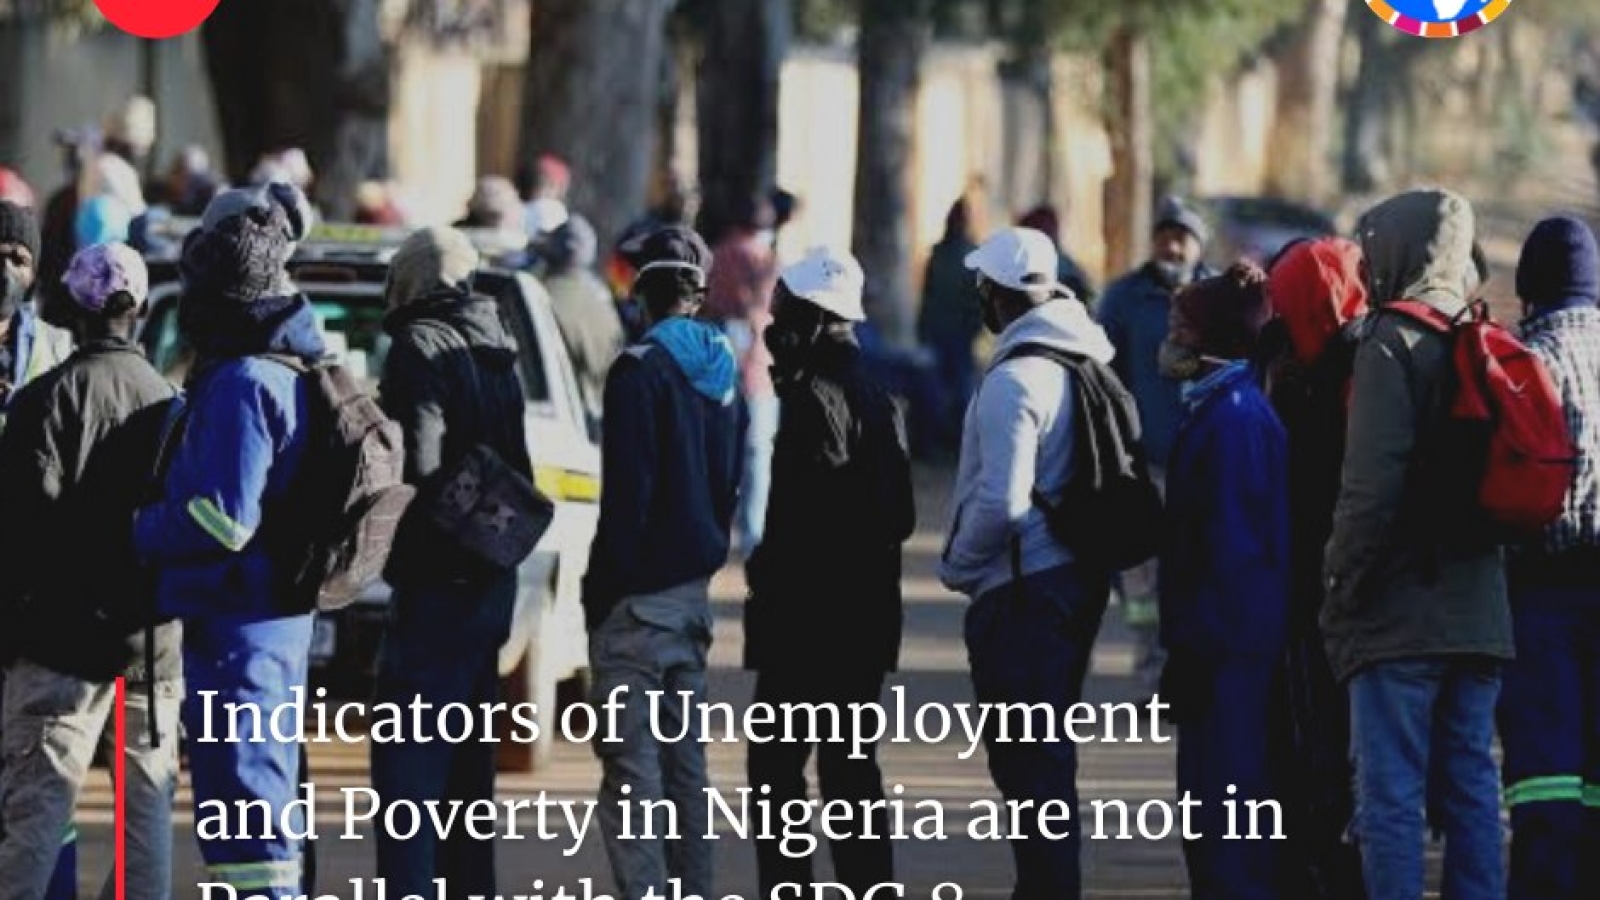 Les indicateurs de chômage et de pauvreté au Nigeria ne sont pas parallèles à l'ODD 8